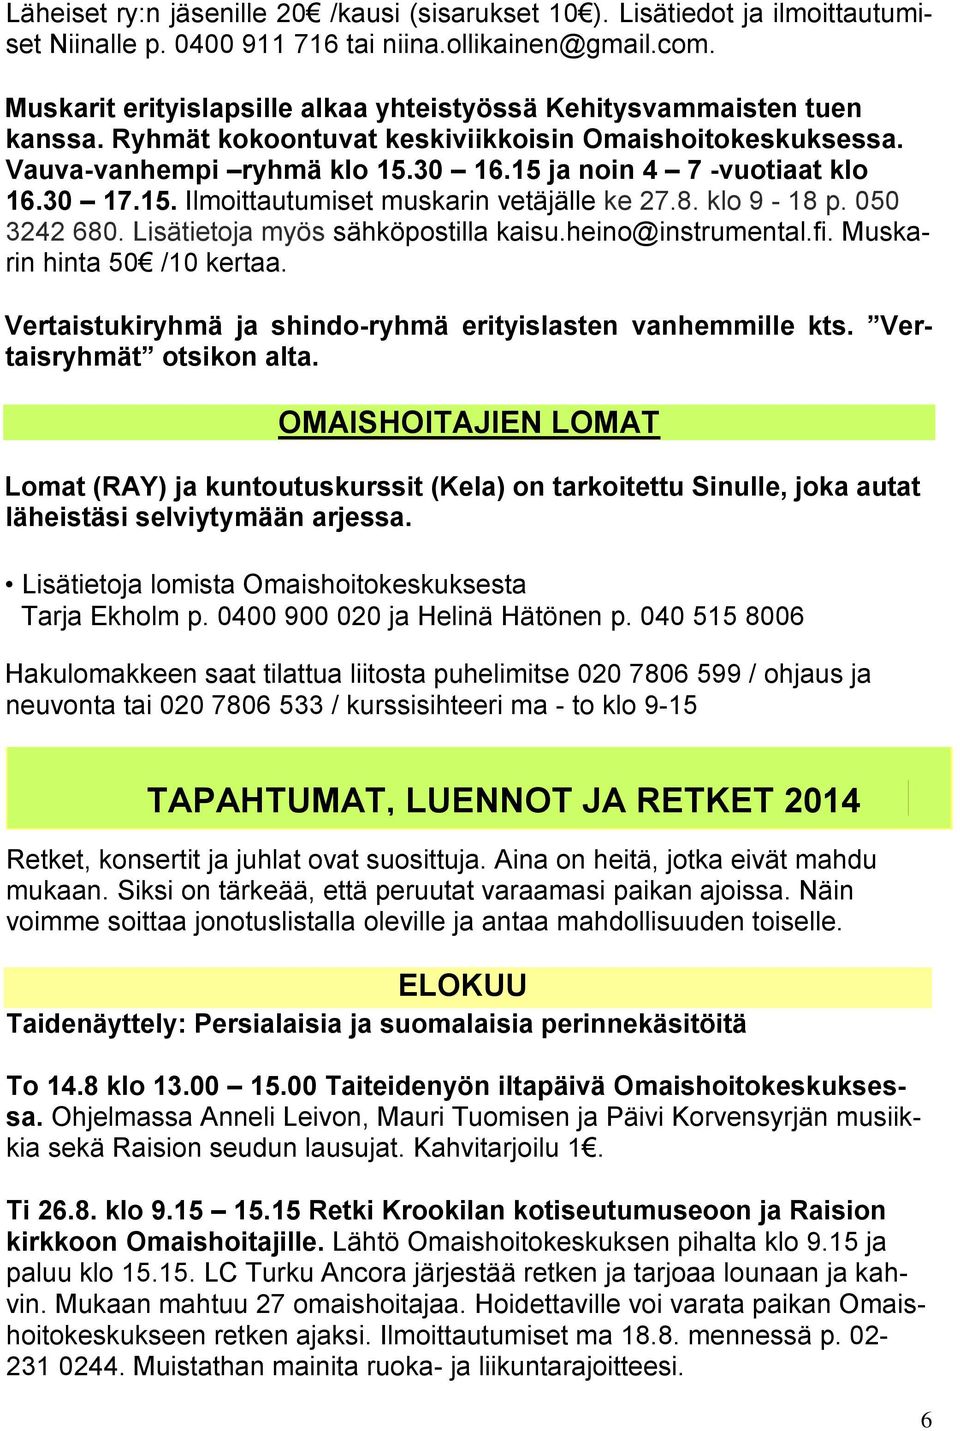 30 17.15. Ilmoittautumiset muskarin vetäjälle ke 27.8. klo 9-18 p. 050 3242 680. Lisätietoja myös sähköpostilla kaisu.heino@instrumental.fi. Muskarin hinta 50 /10 kertaa.